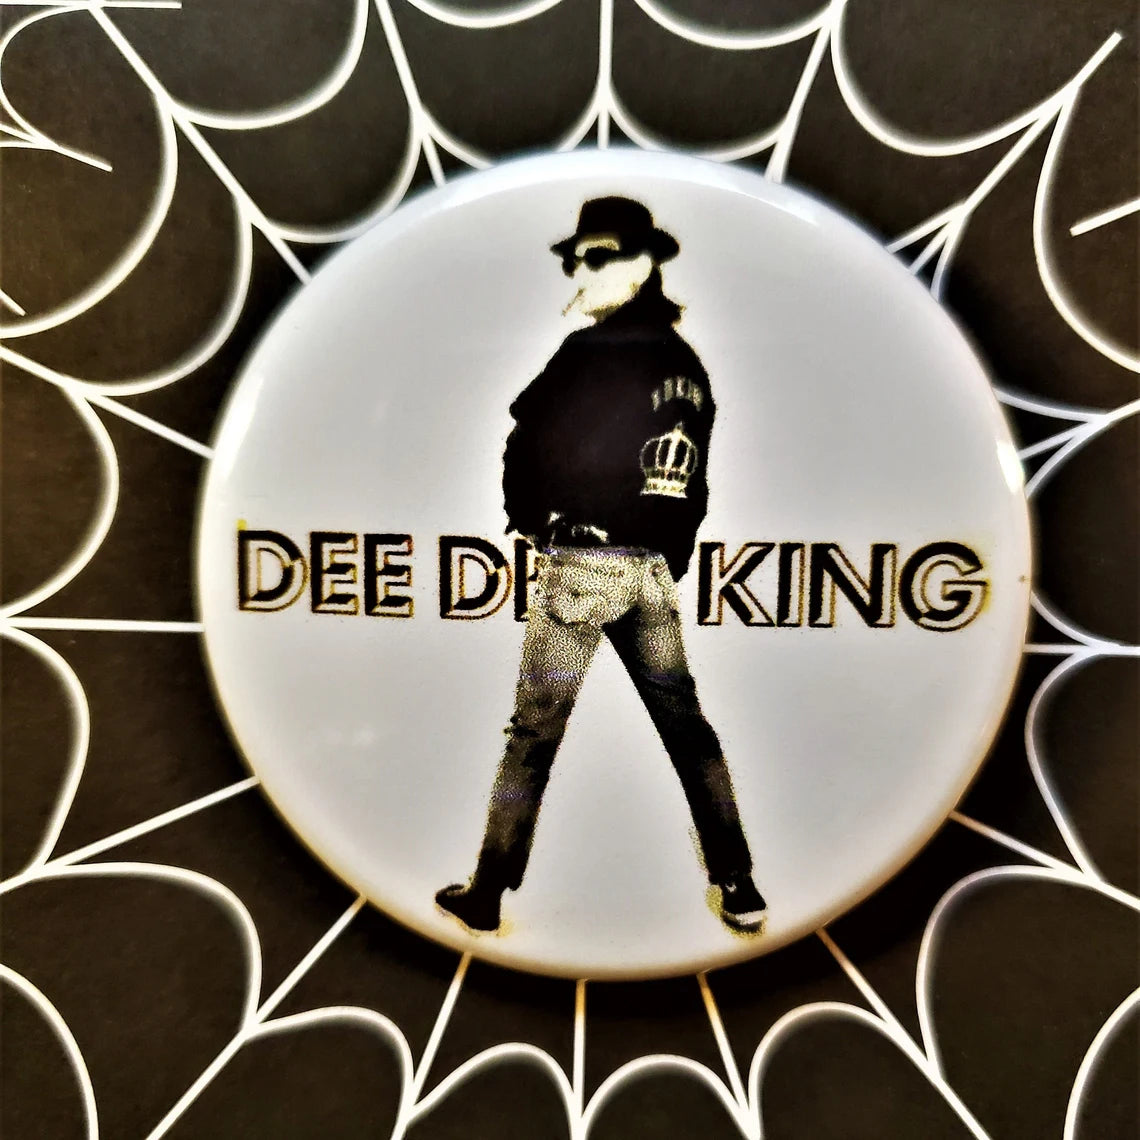 Dee Dee King pinback Buttons & Bottle Openers.